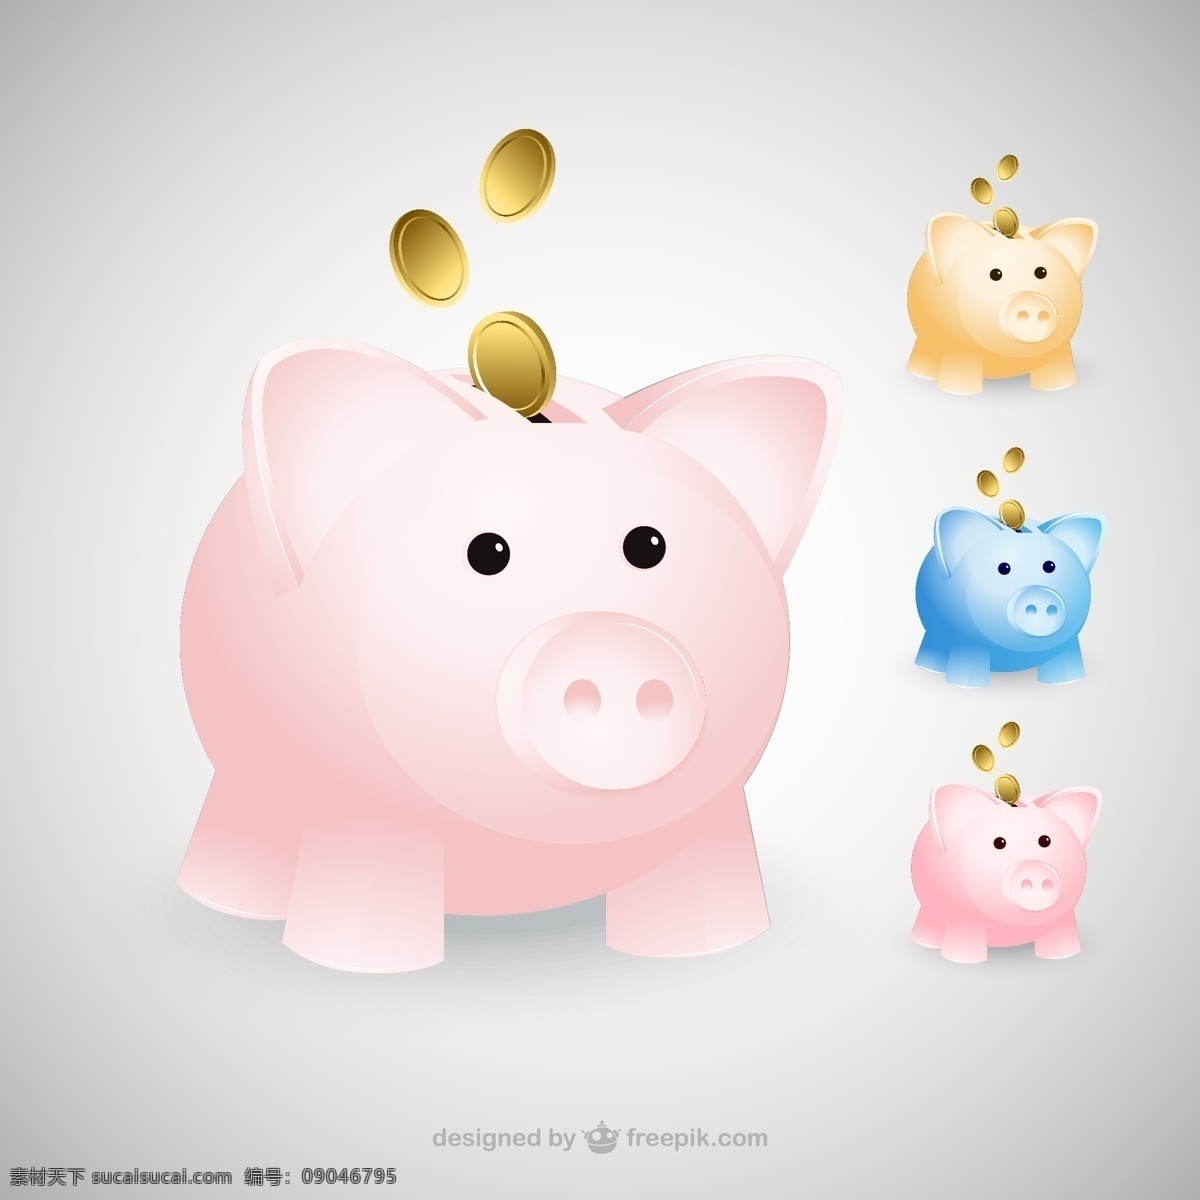 彩色 猪 储蓄罐 矢量 存钱罐 小猪 金币 金钱 金融 动物 家畜 插画 背景 海报 画册 白色